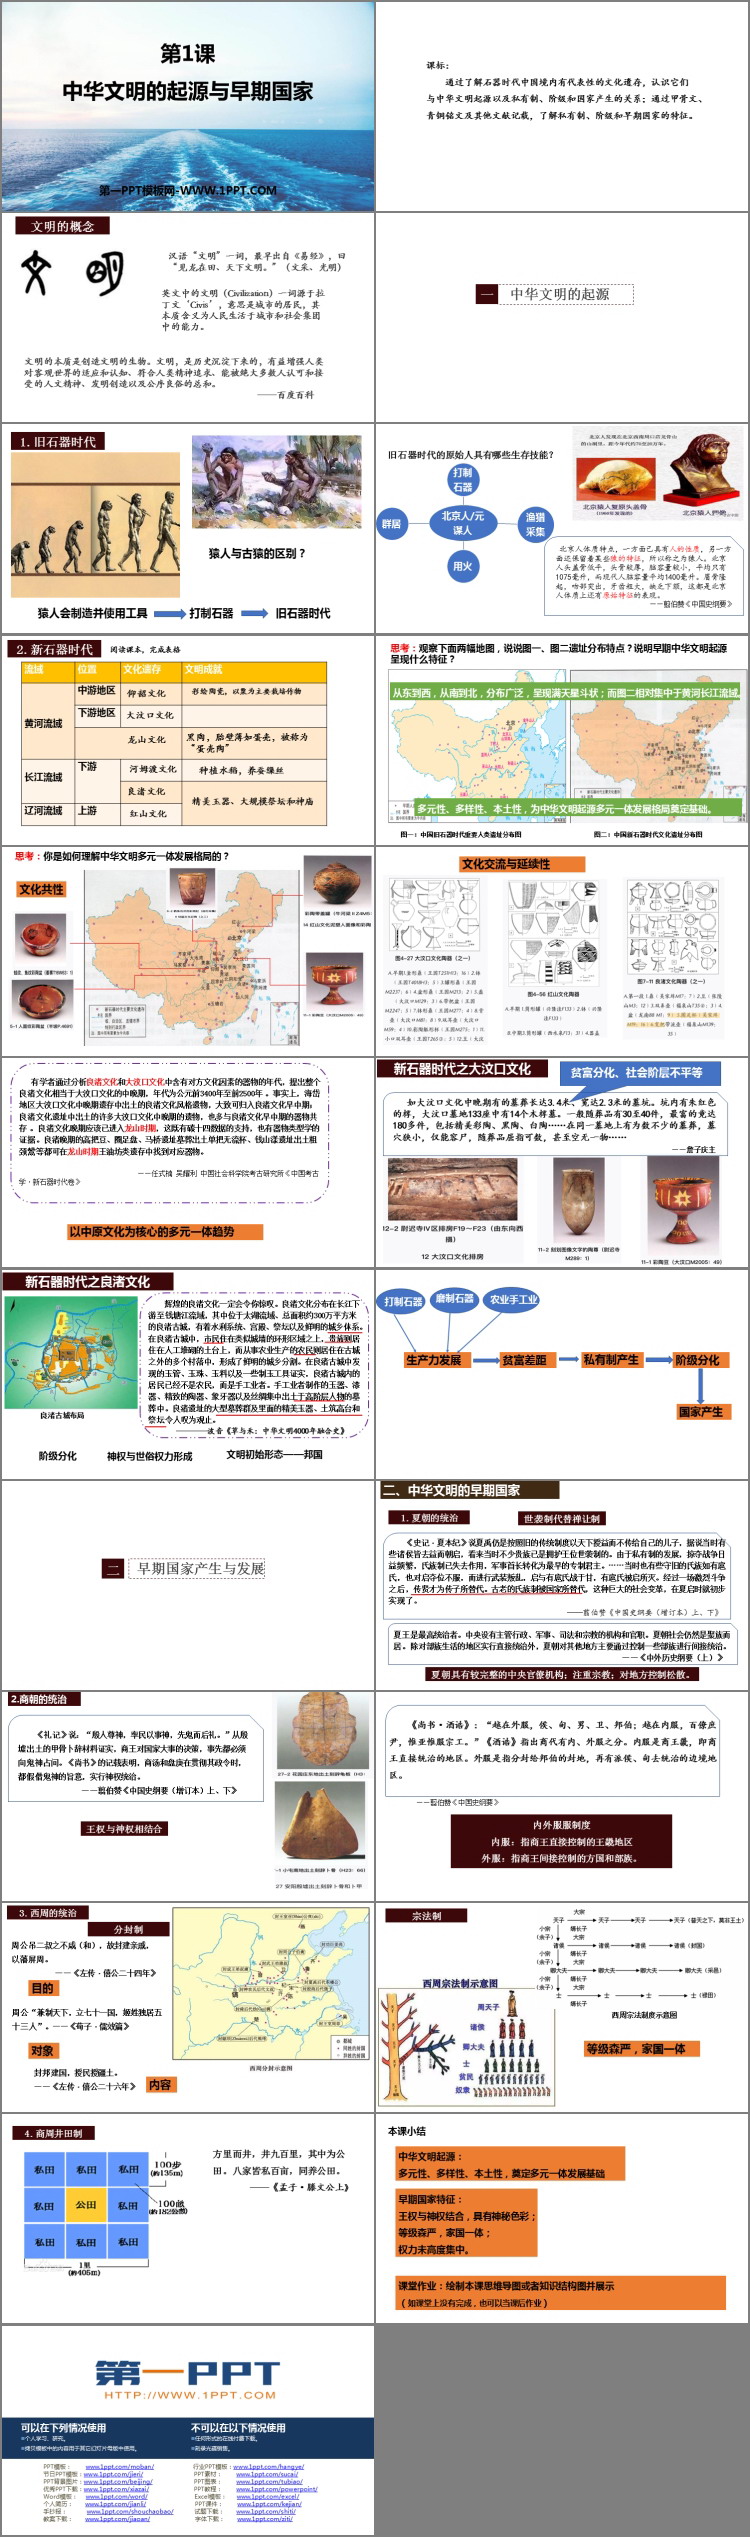 《中华文明的起源与早期国家》PPT免费下载